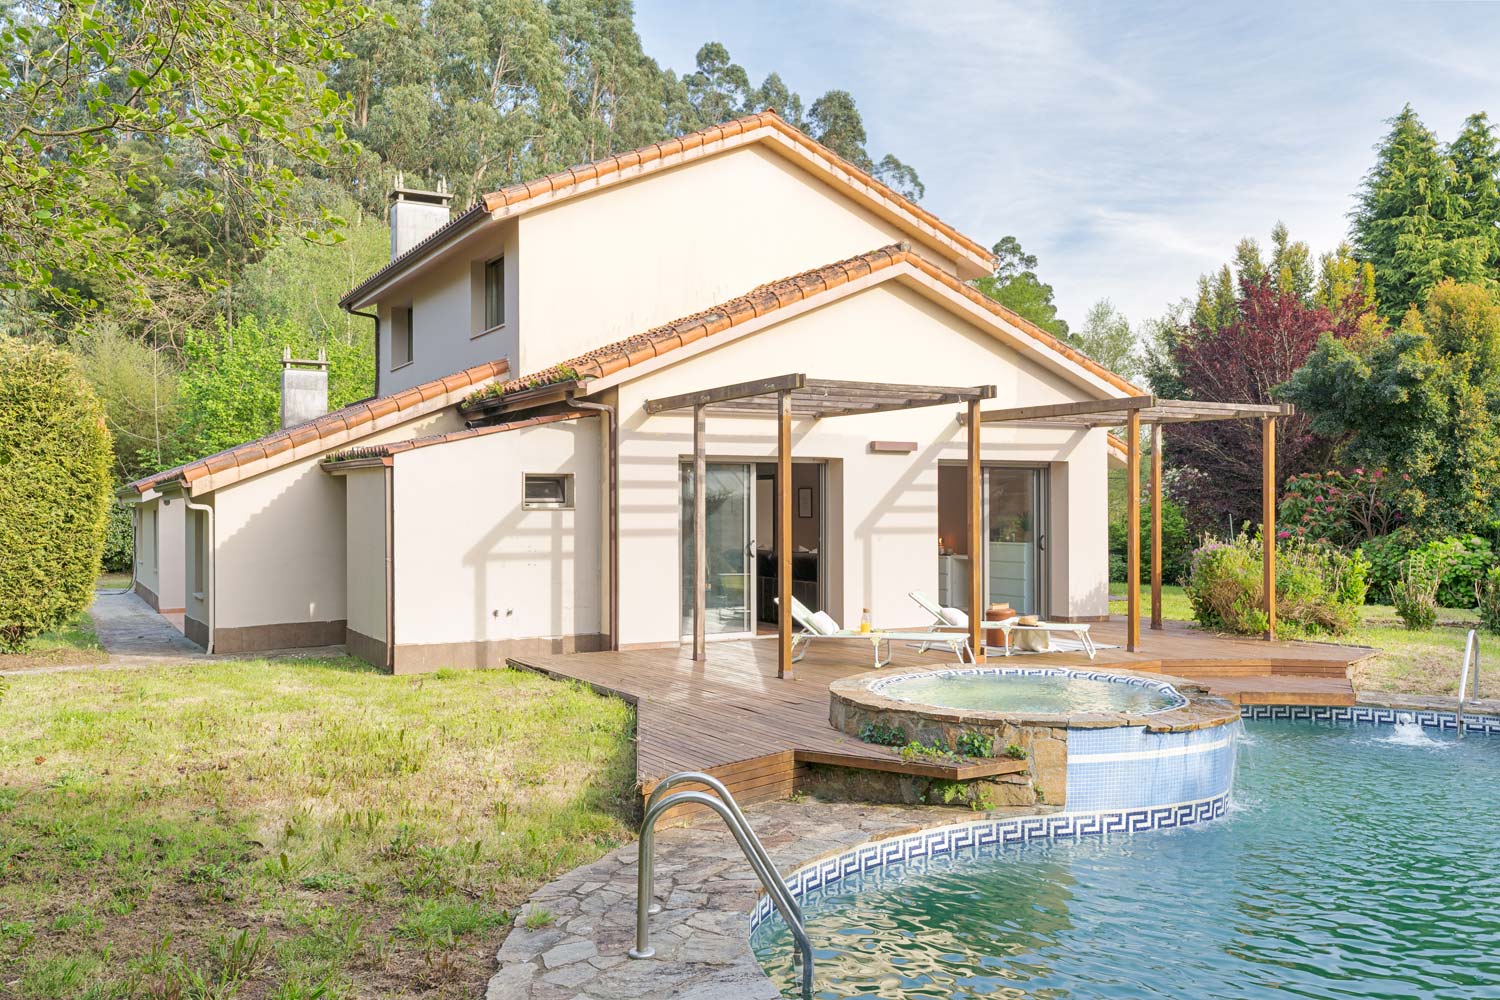 Casa moderna con piscina y jacuzzi en un exuberante jardín verde, con una amplia terraza de madera y zona de relax al aire libre